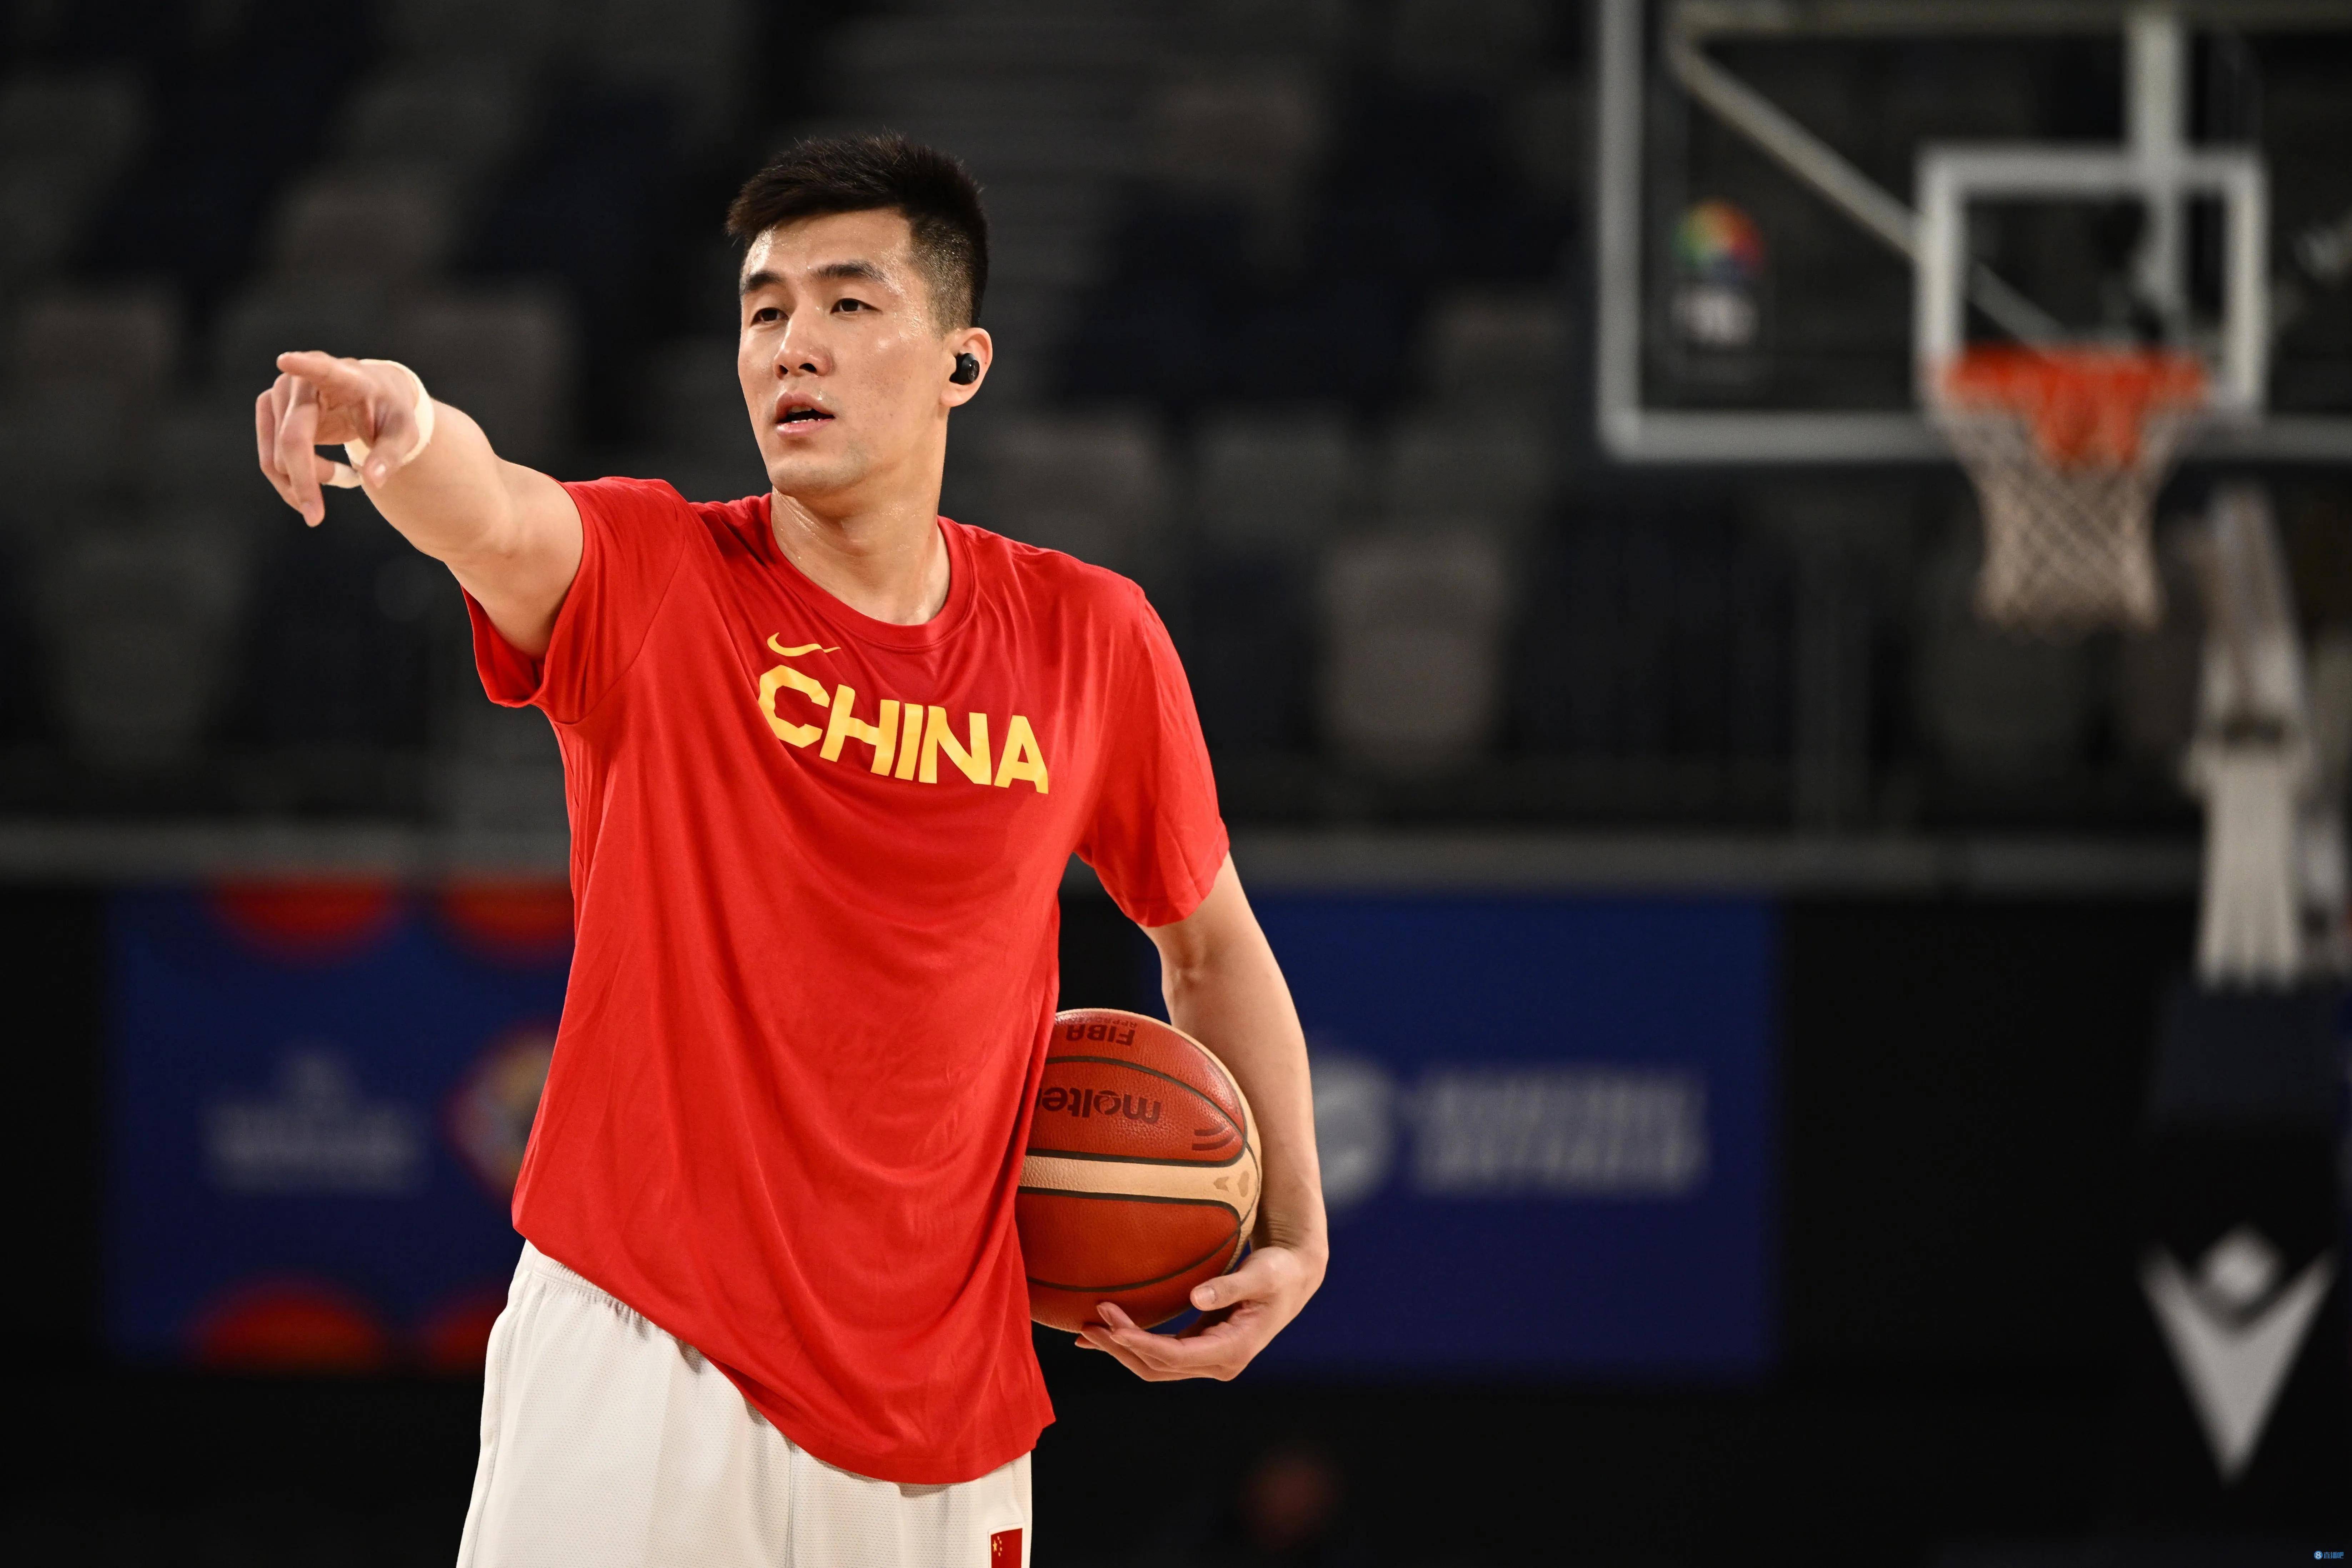 中国男篮名单公布,被遗忘的郭艾伦还有机会入选吗?